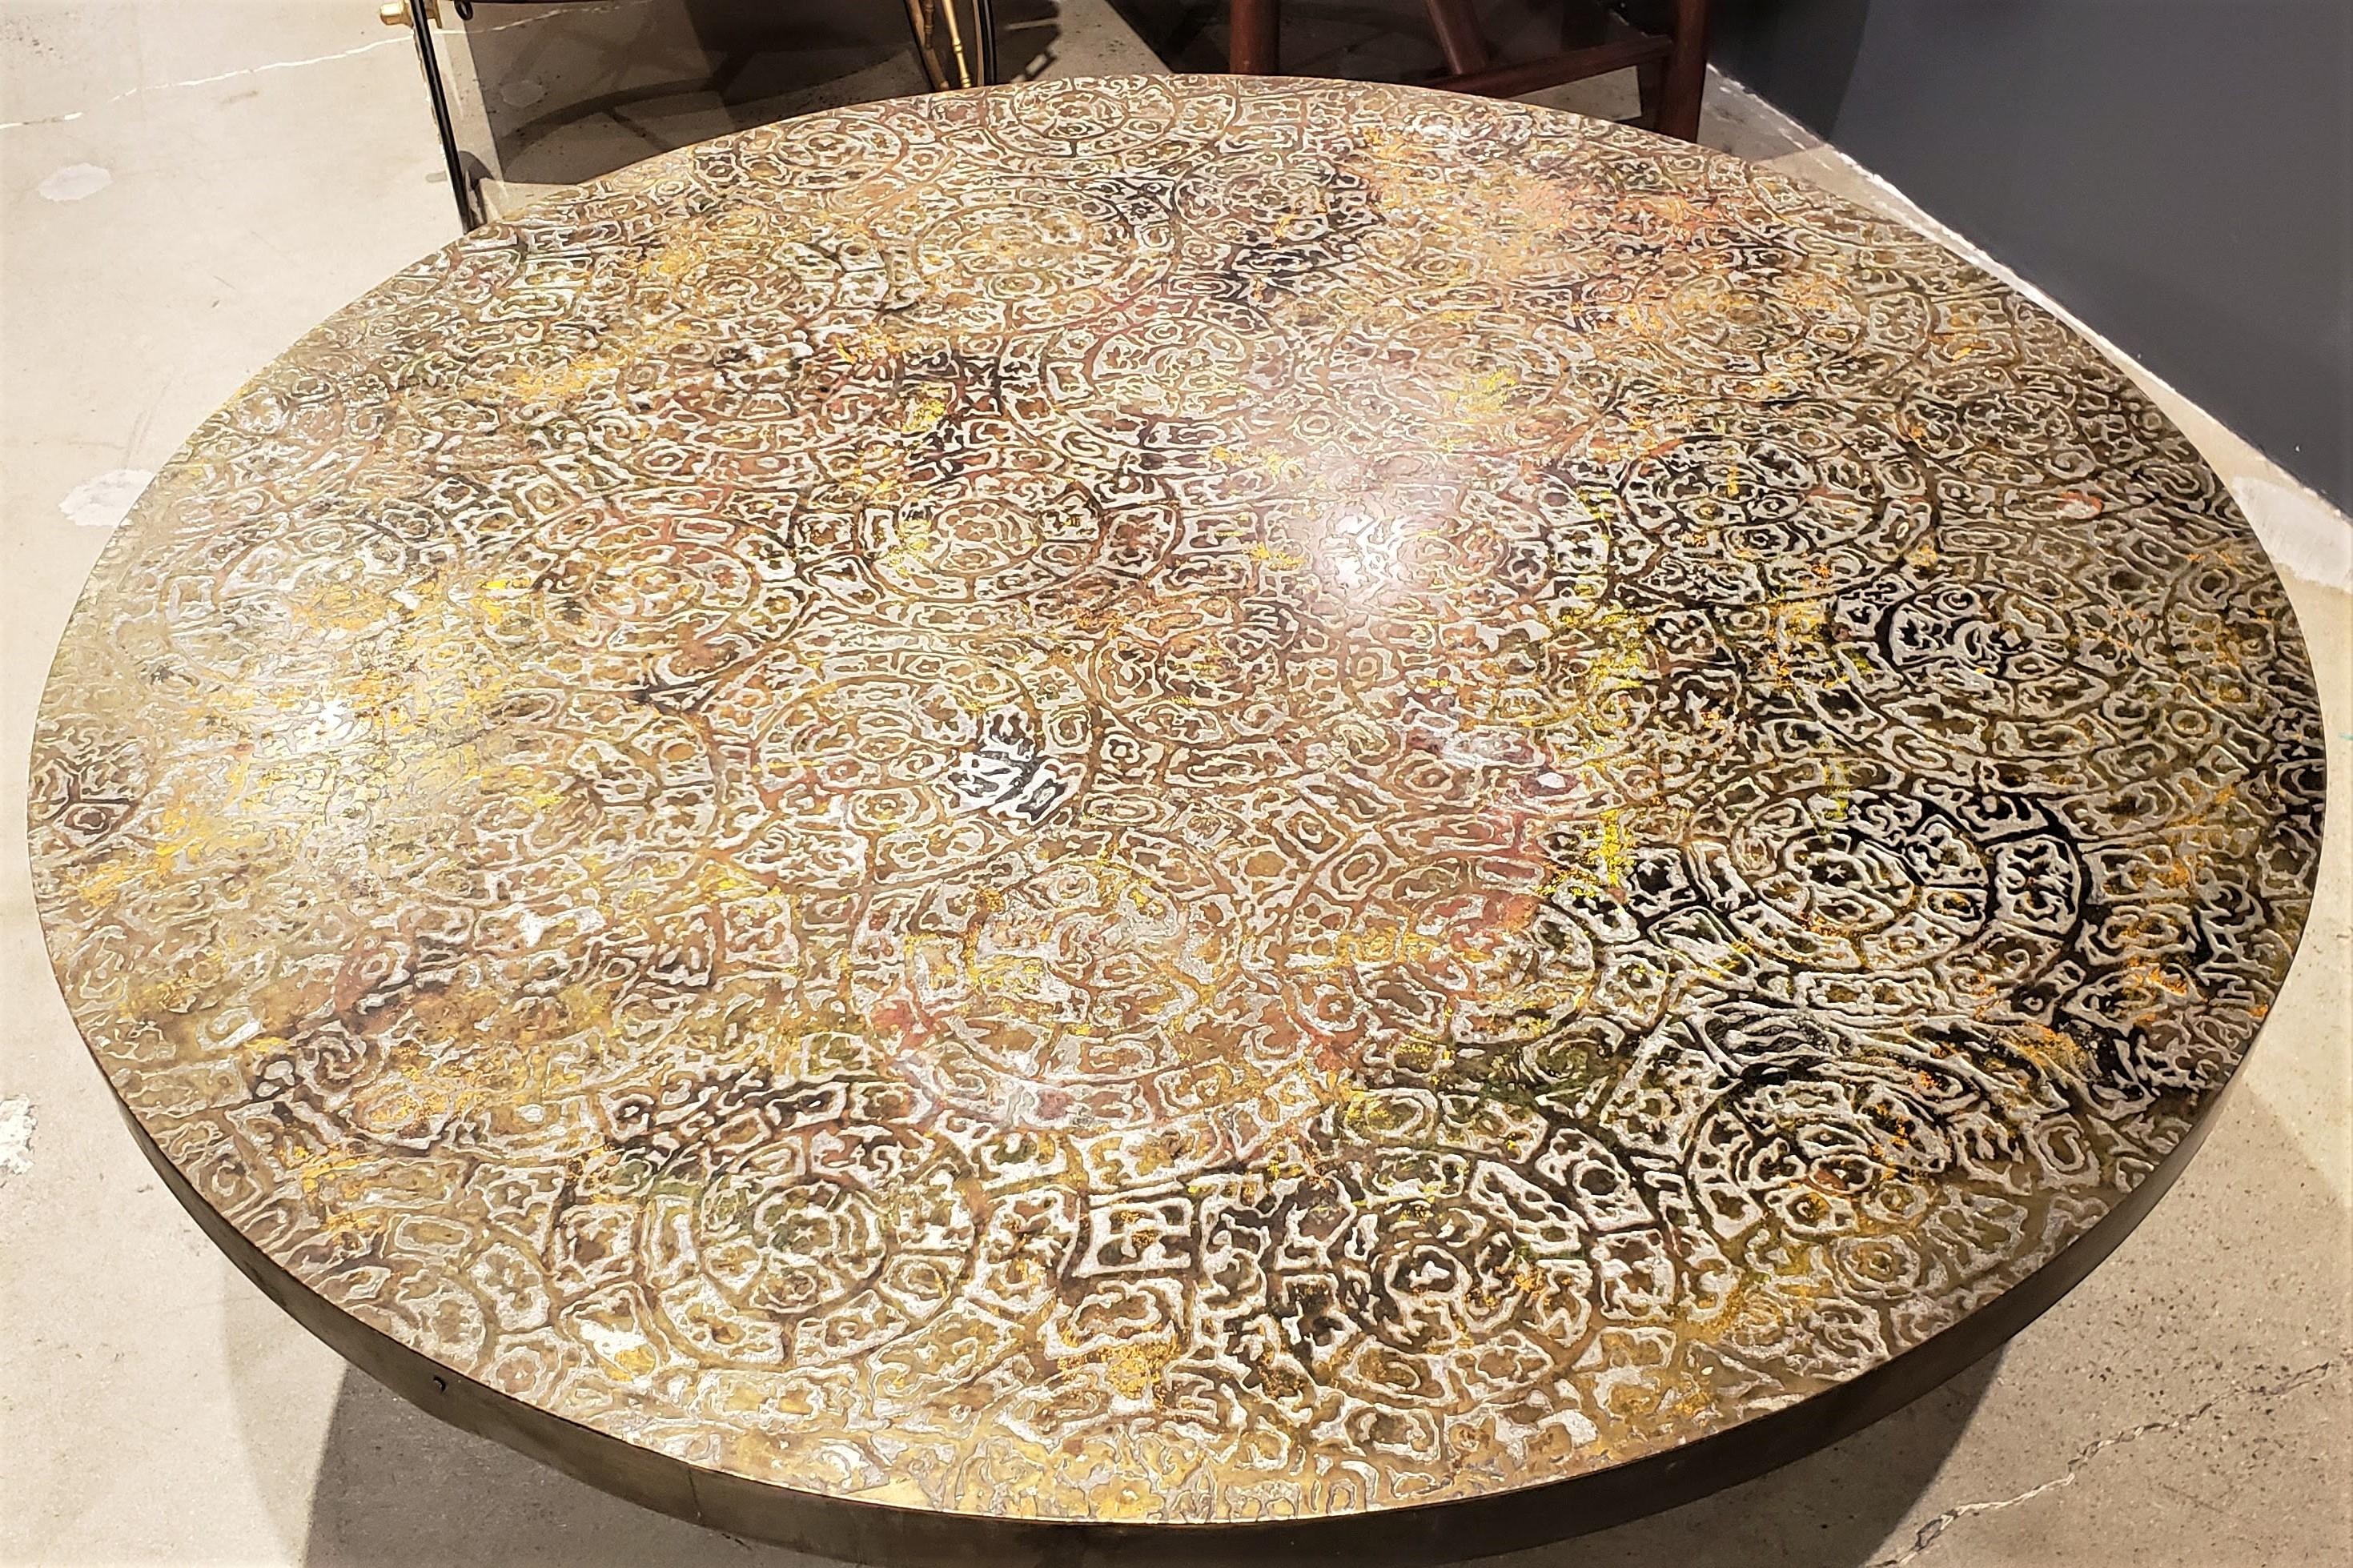 bronze table